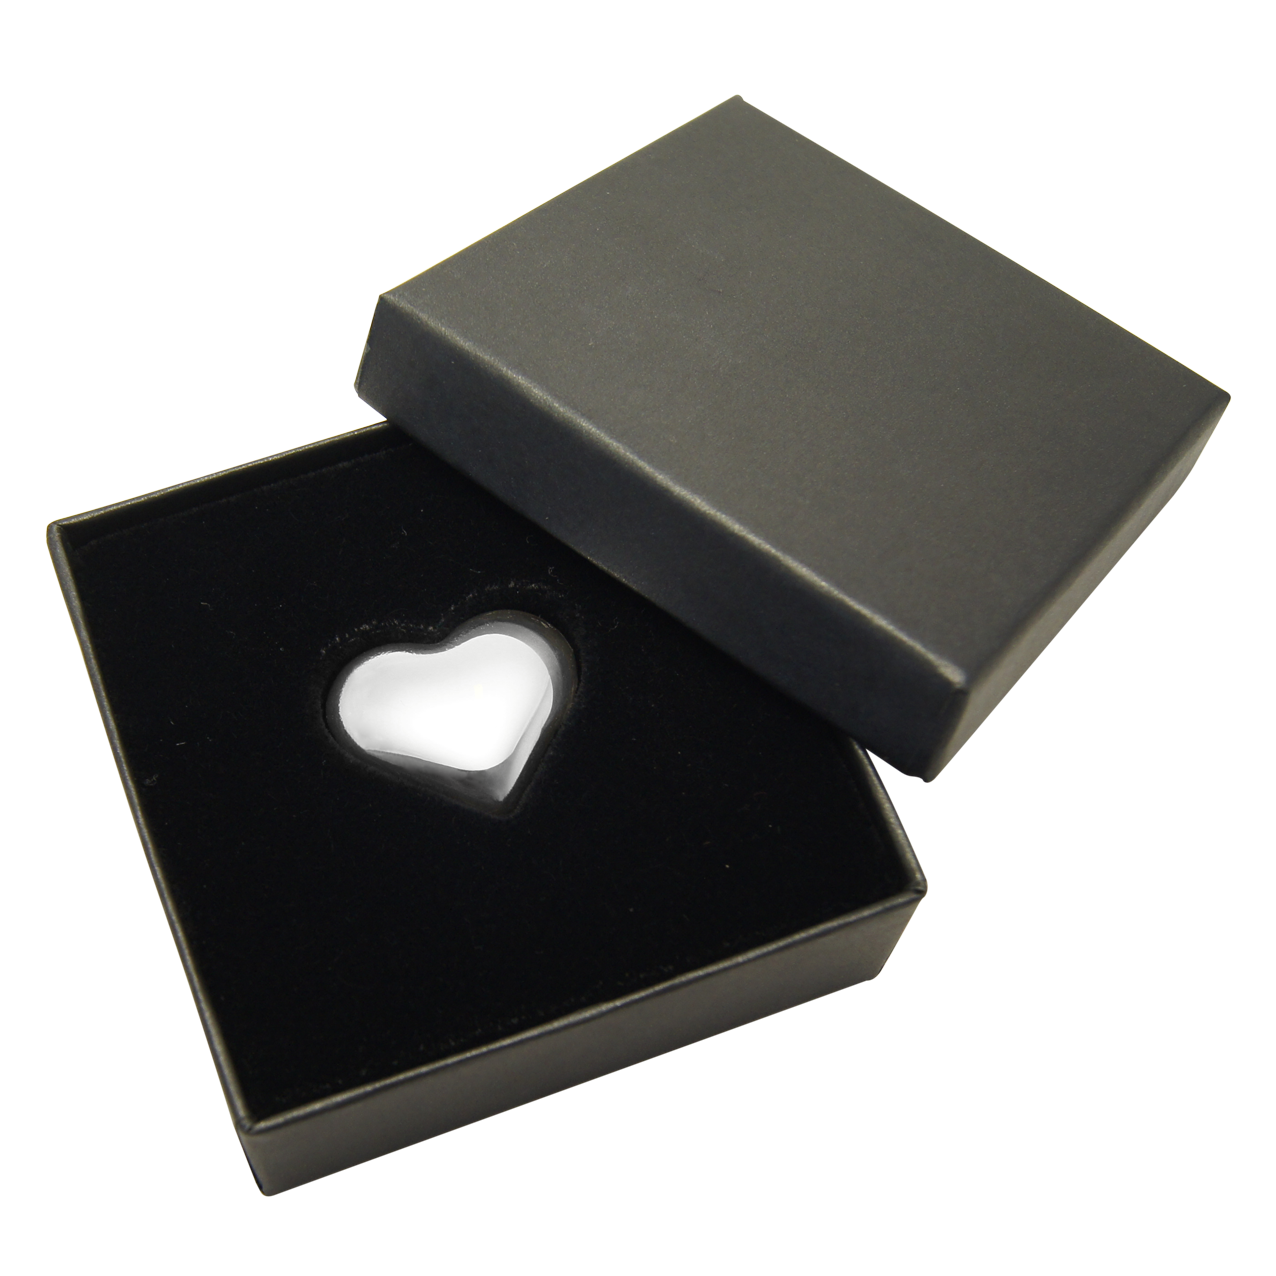 Silver Heart 1 oz .999 cast - in case